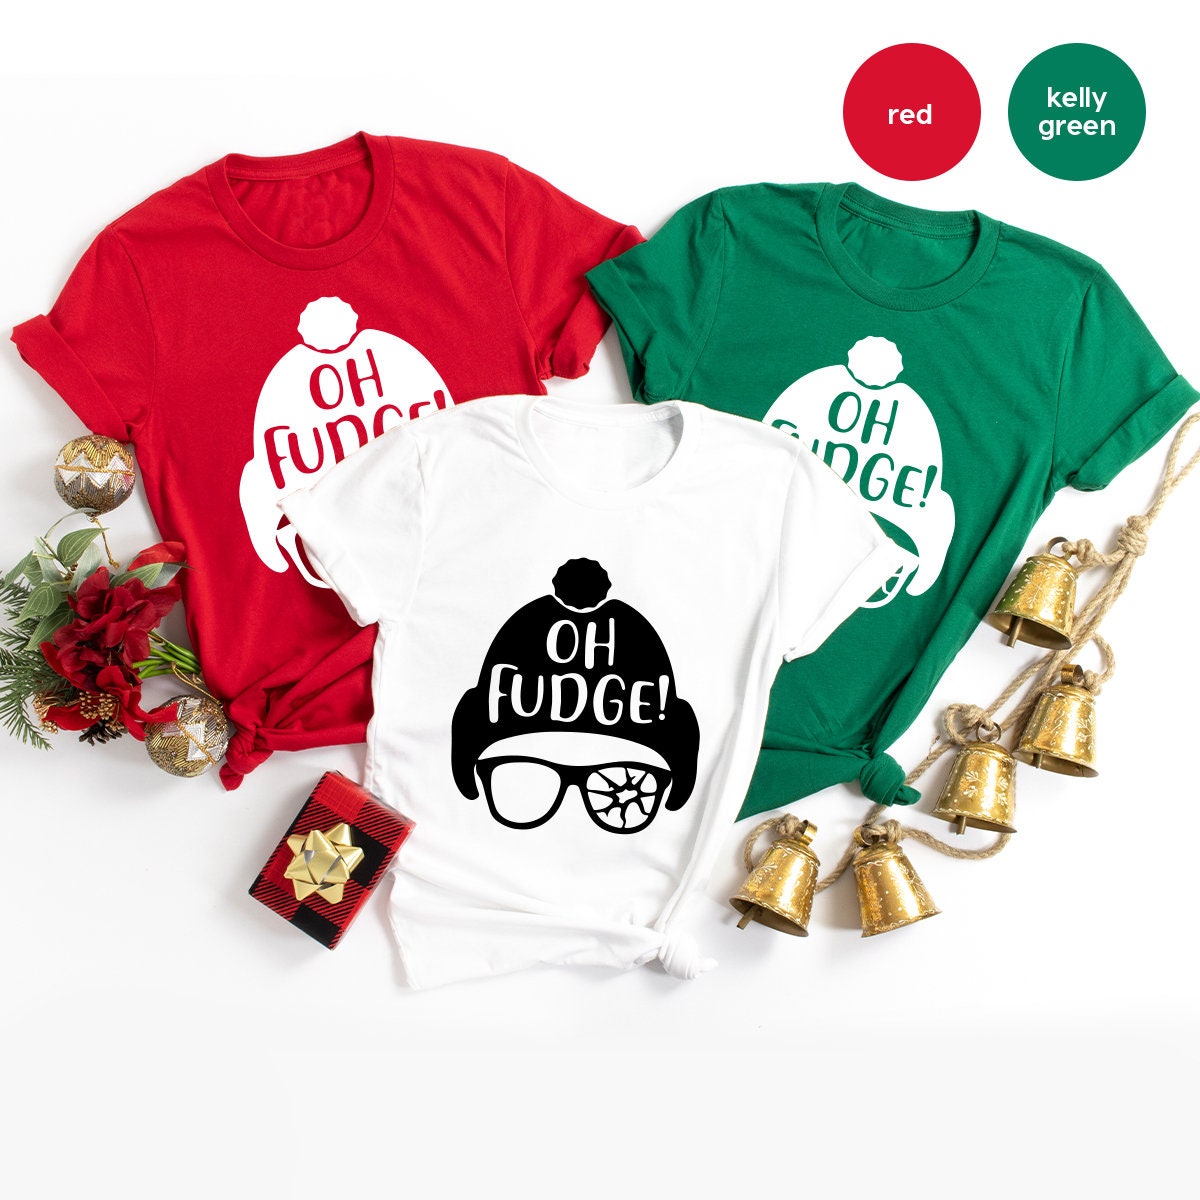 Funny Christmas Shirt, Oh Fudge Shirt, Christmas T Shirt, Christmas Vacation Shirt, Holiday Shirt, Funny Holiday Tee, Christmas Gift - Fastdeliverytees.com